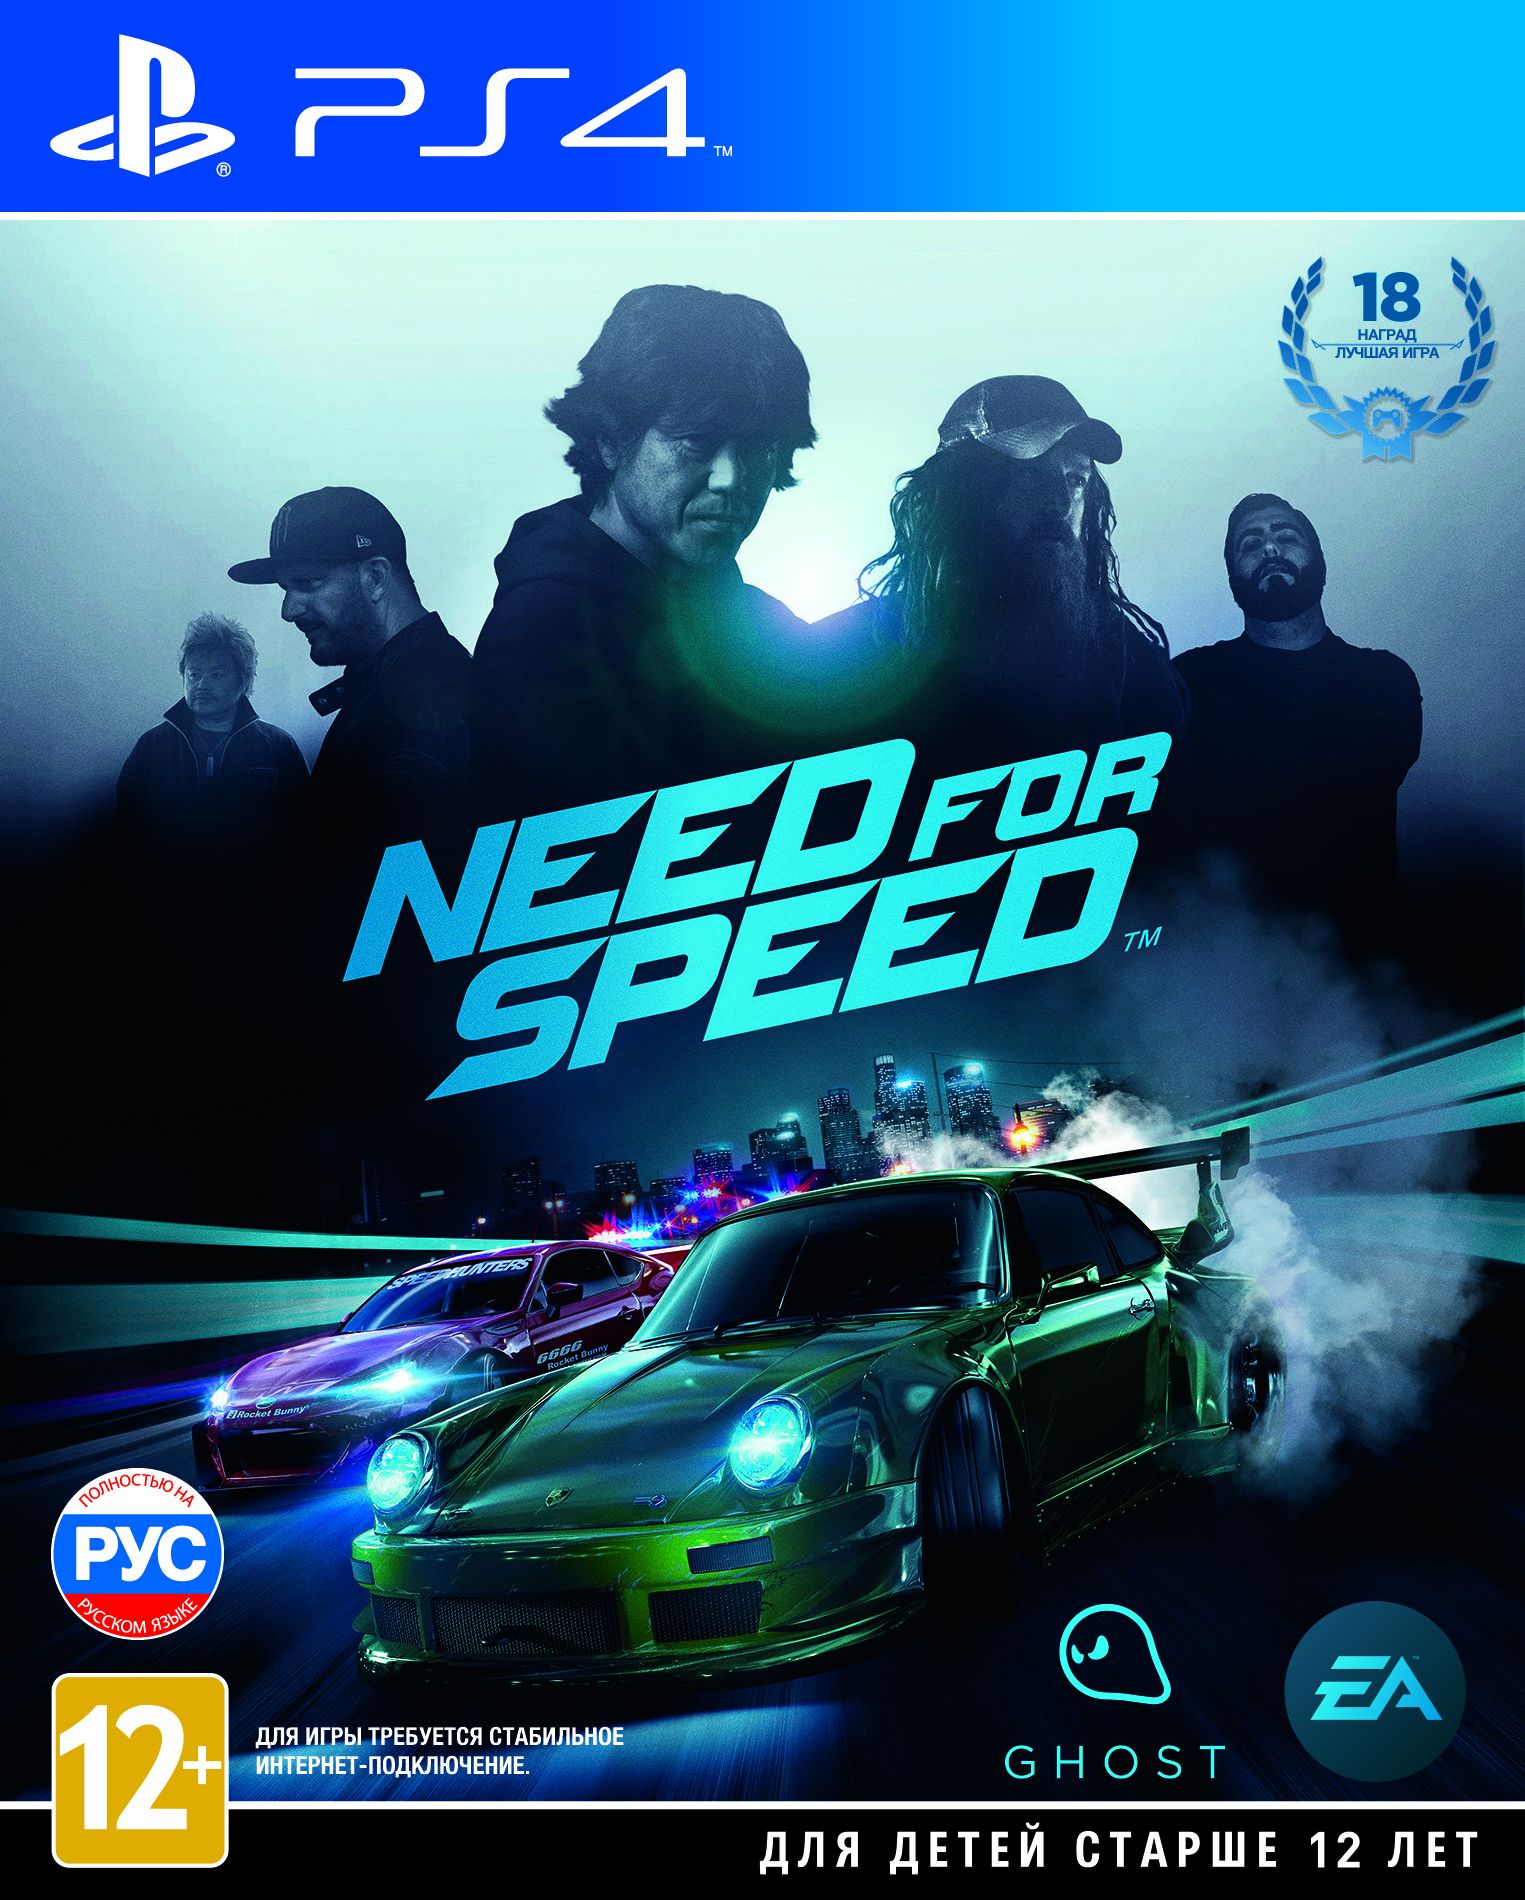 Свежая Need for Speed вышла в России